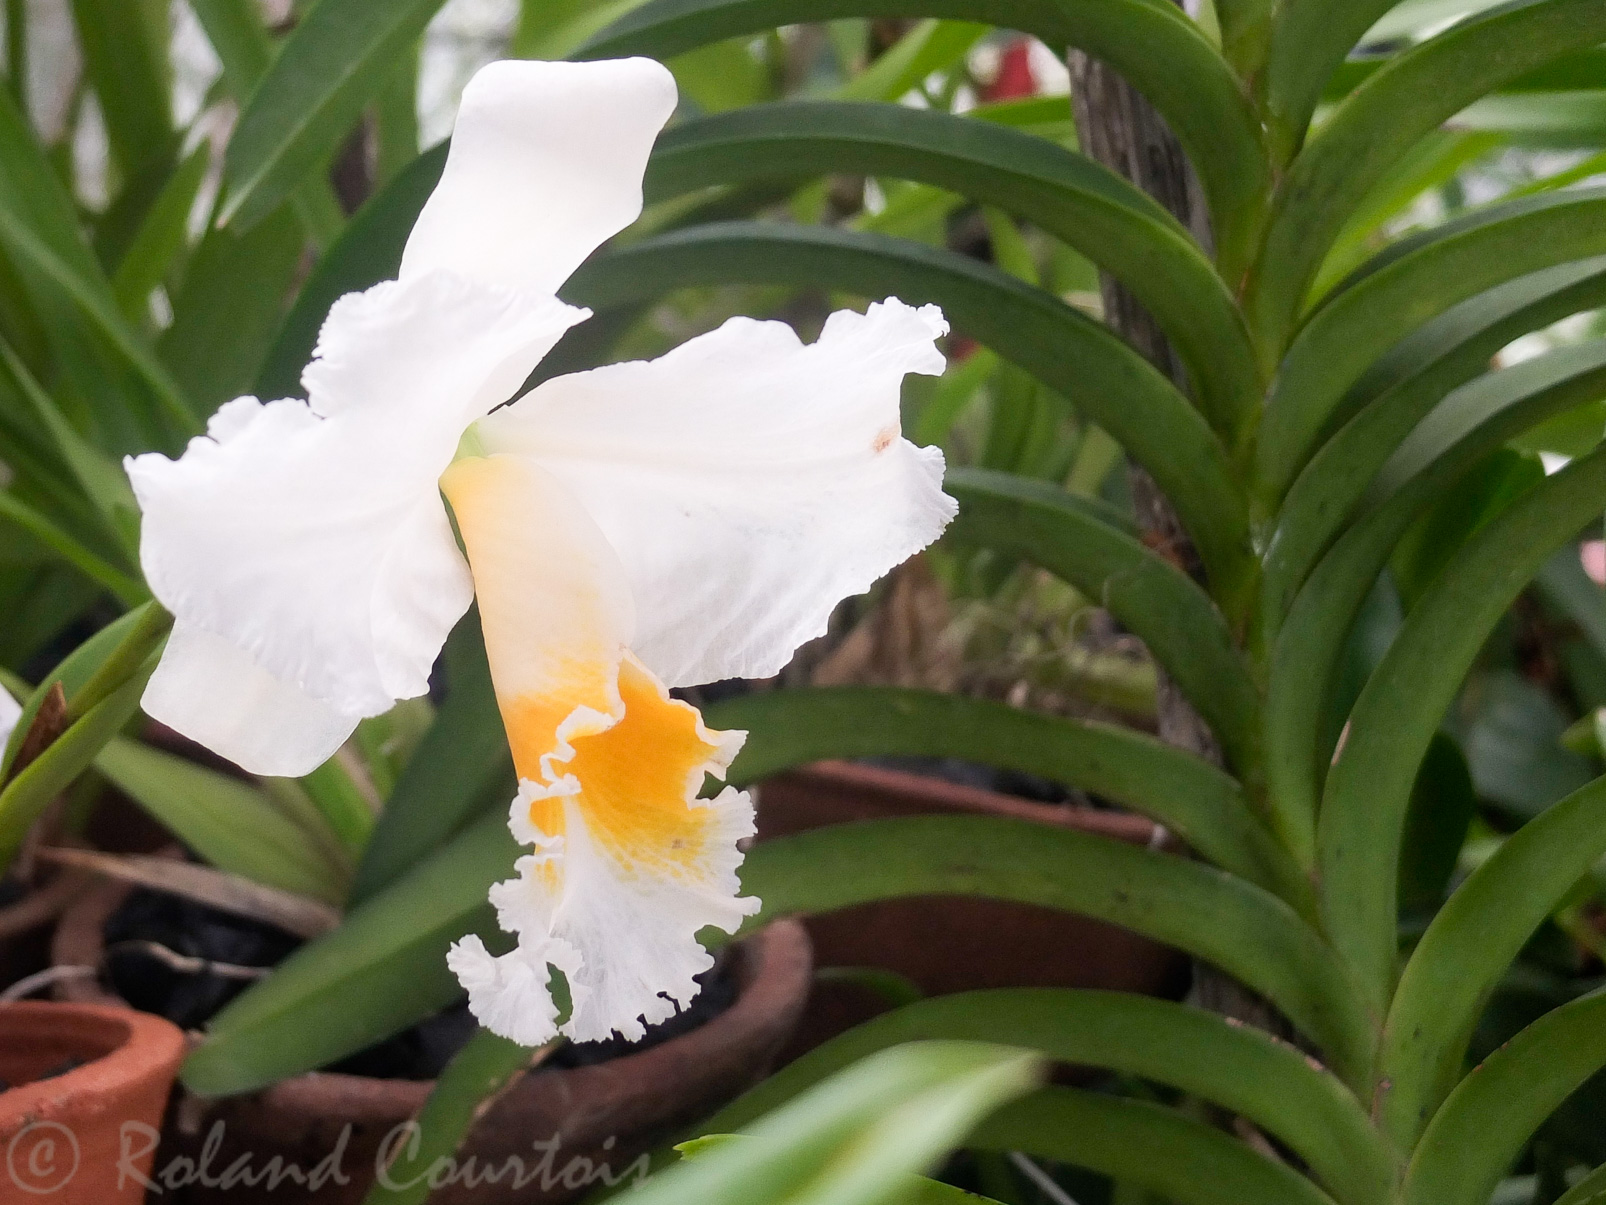 Jardin botanique de Peradeniya. Possède une extraordinaire collection d'orchidées.